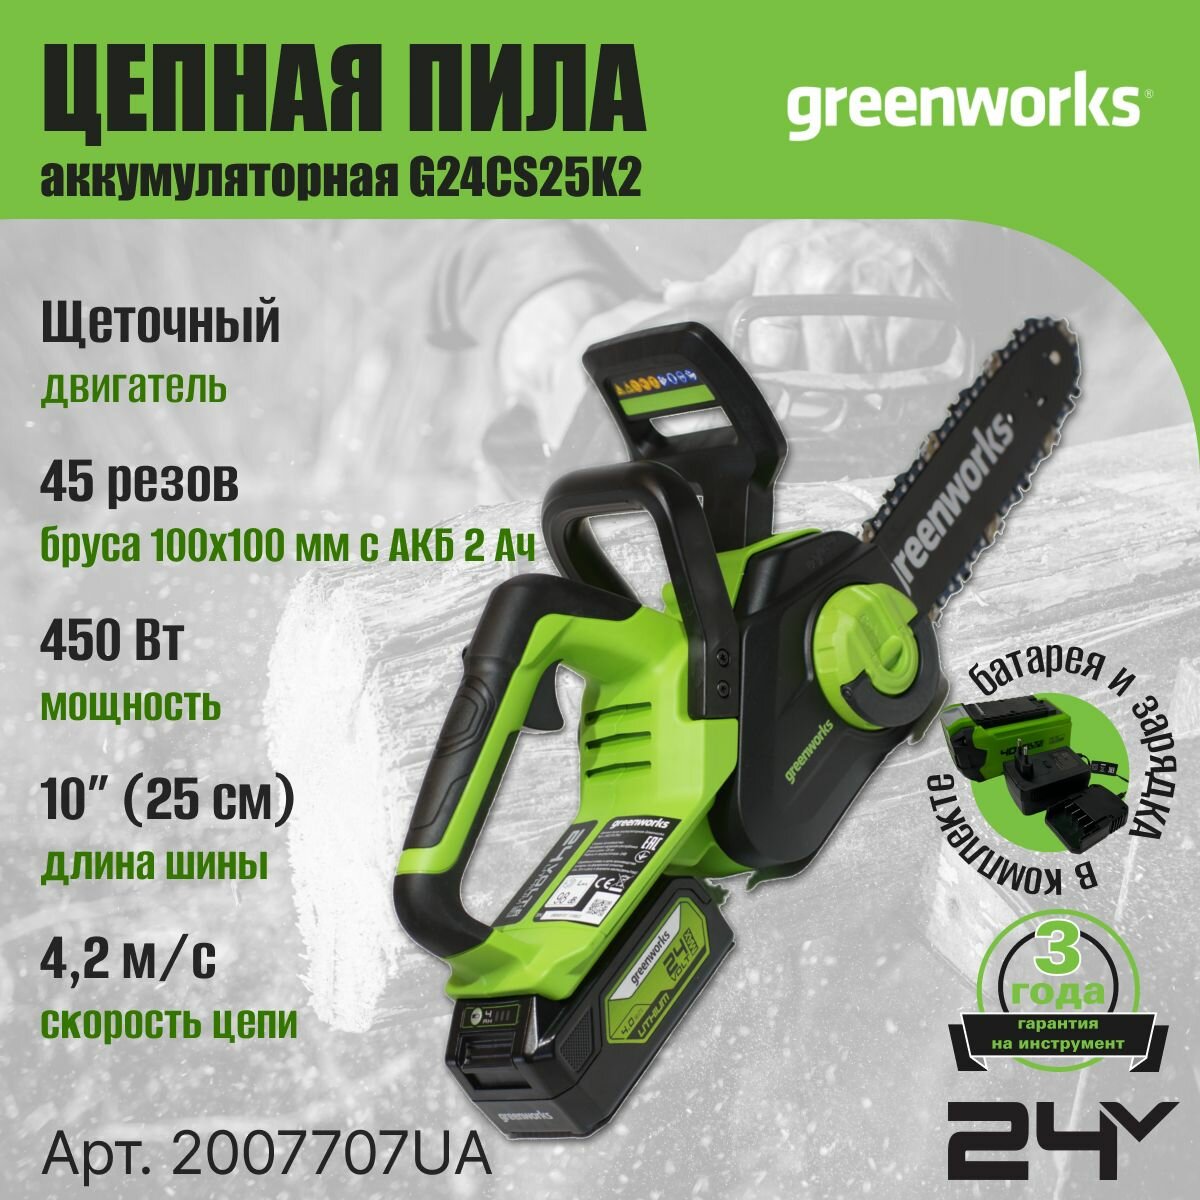 Цепная пила аккумуляторная Greenworks Арт. 2007707UA, 24V, 25см, c 1хАКБ 2Ач и ЗУ